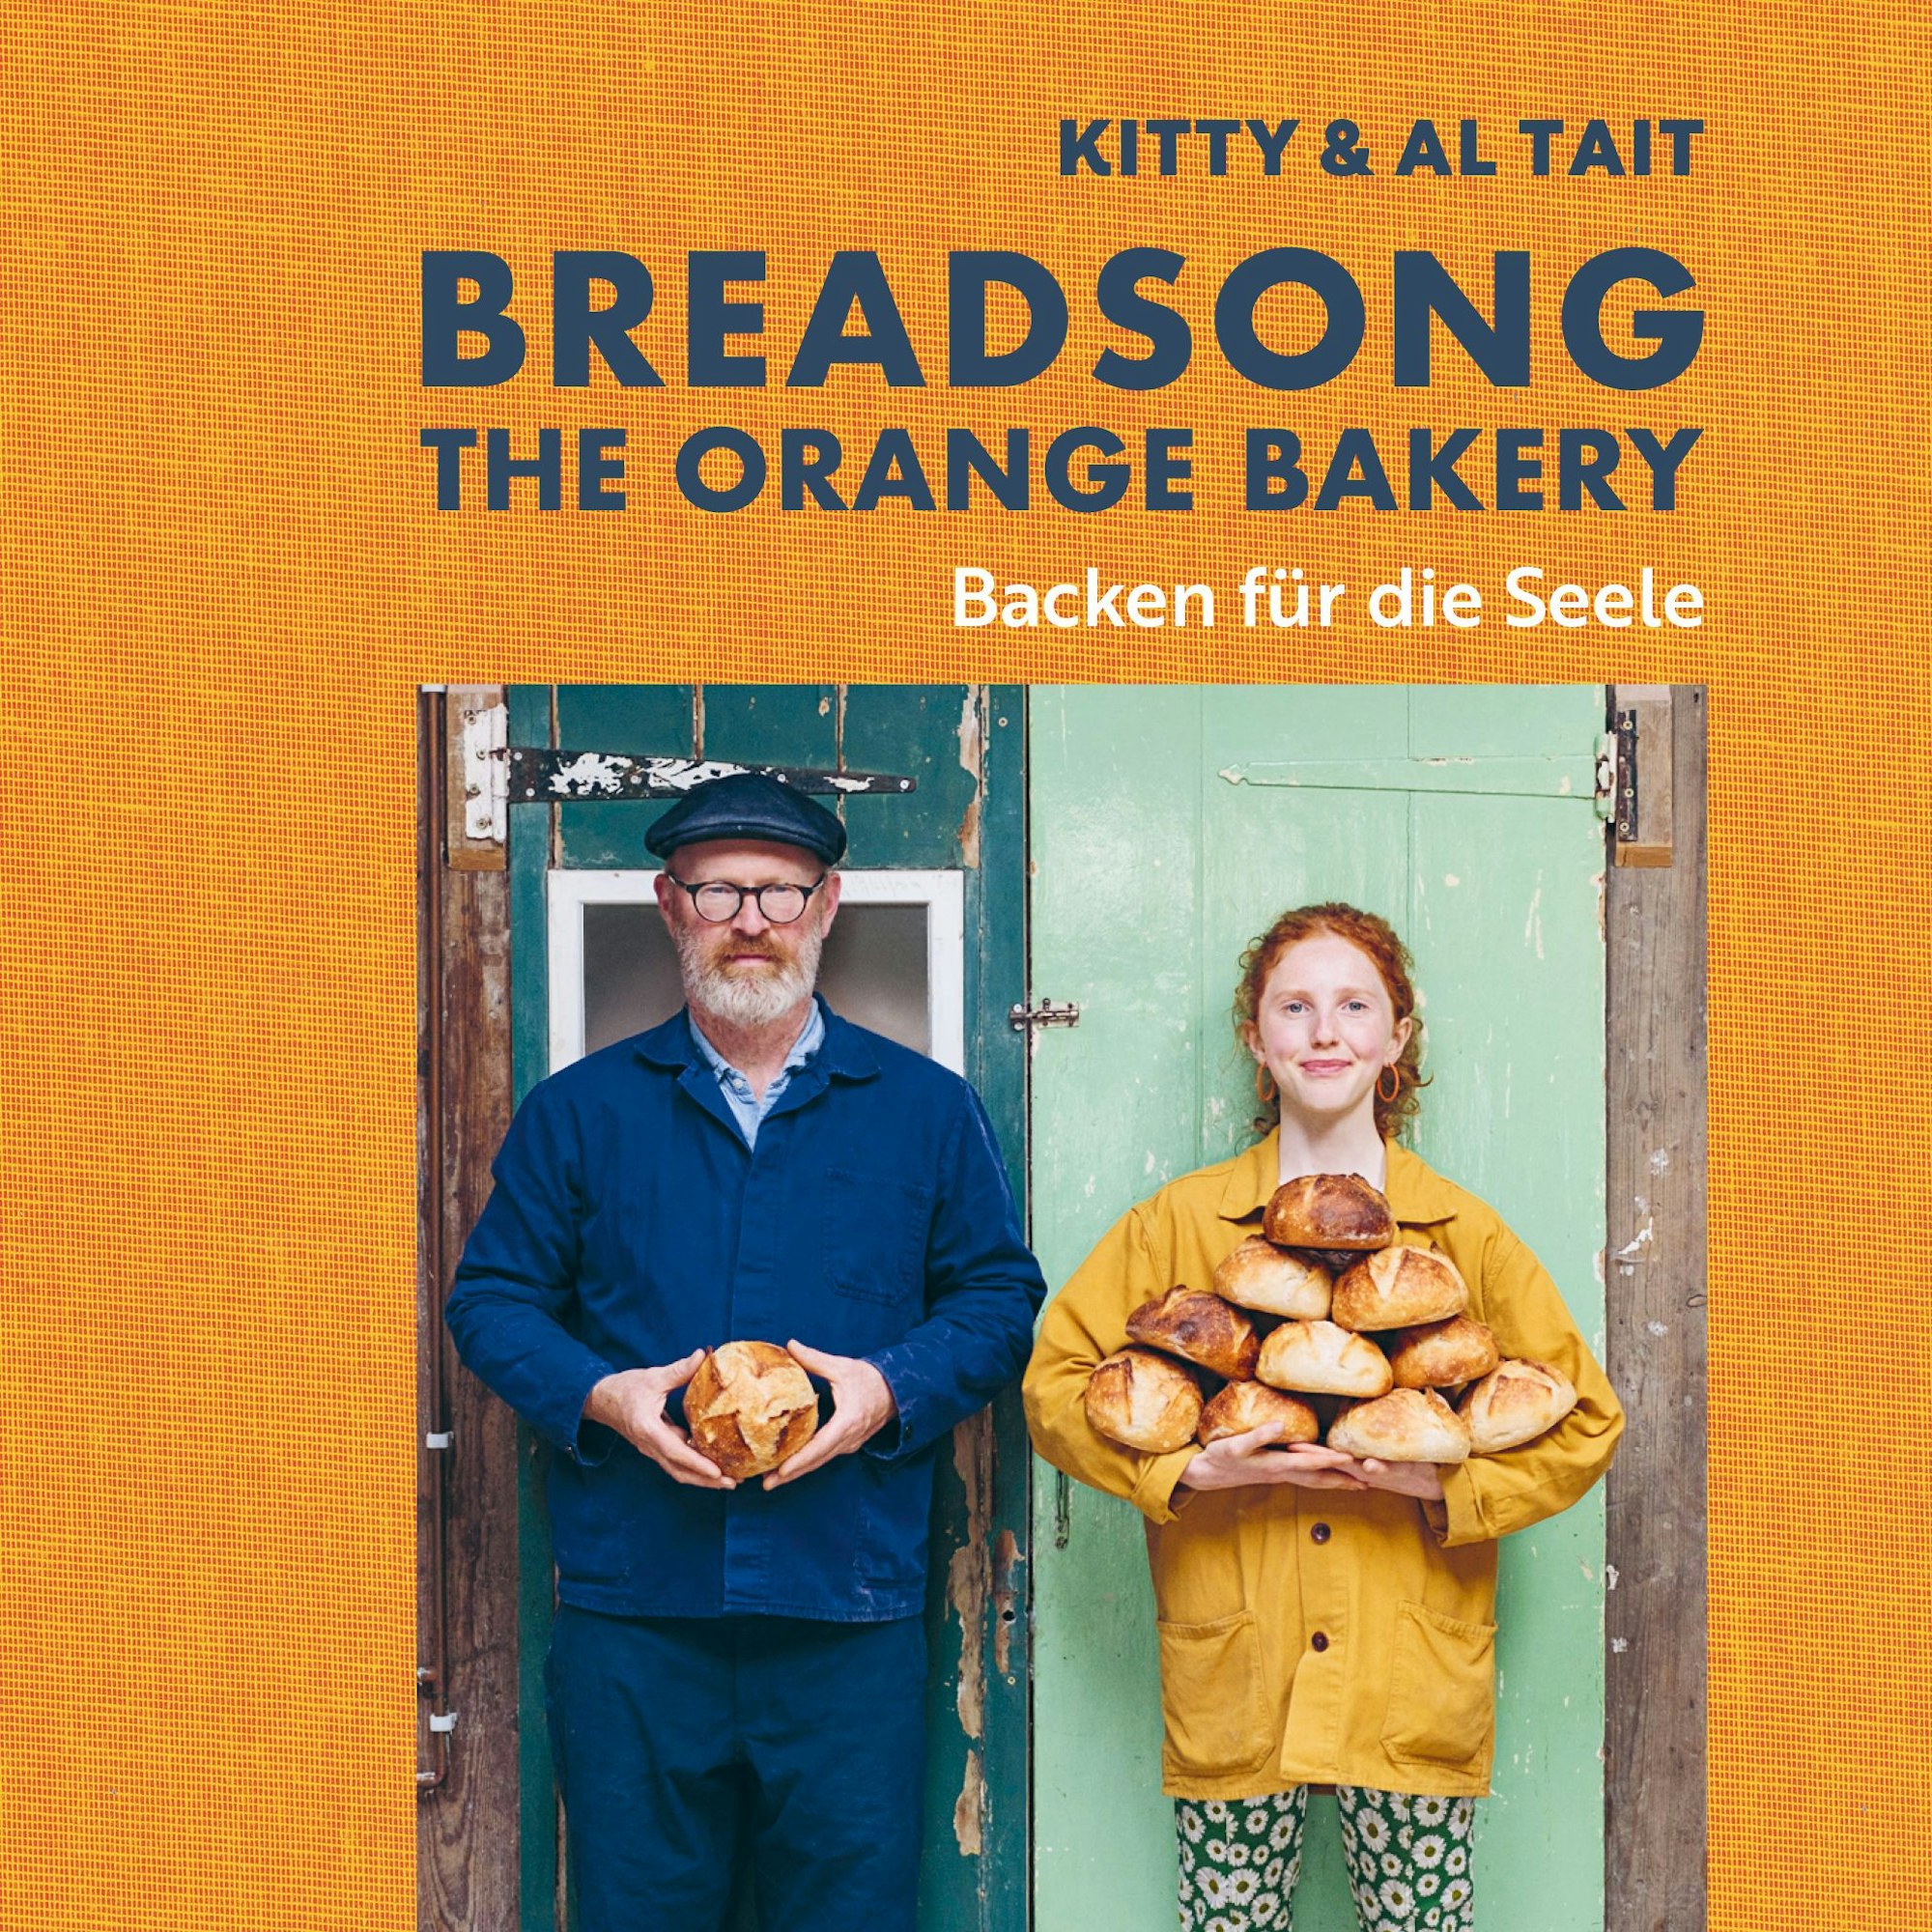 Buchcover von: „Breadsong – The Orange Bakery, Backen für die Seele. 60 herzerwärmende Rezepte, die unser Leben veränderten“, Kitty Tait, Al Tait, Christian Verlag, 304 Seiten, 34,99 Euro